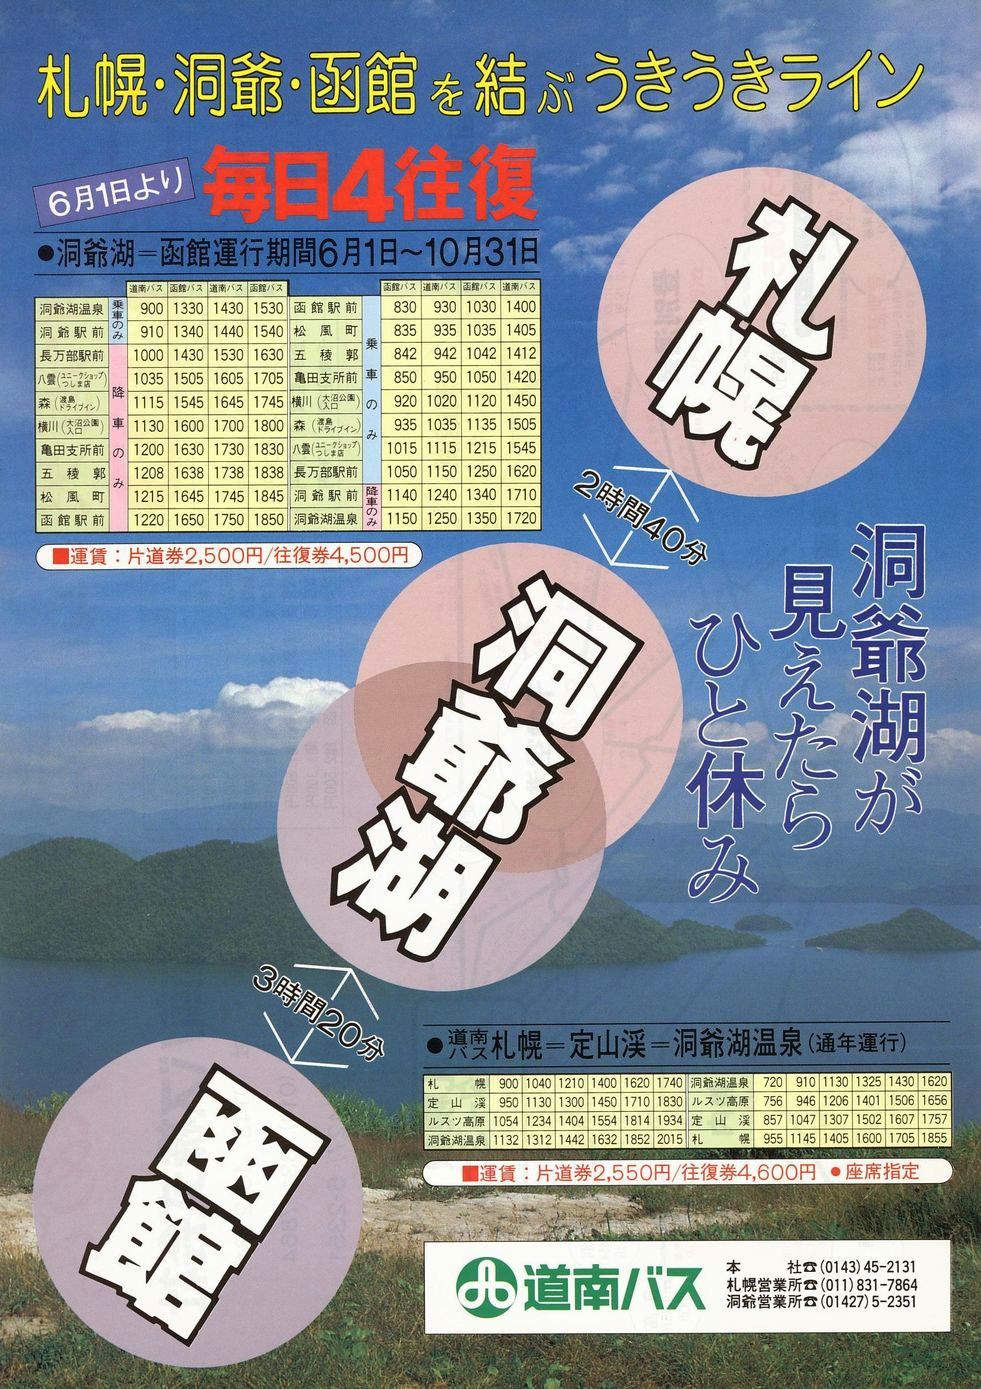 1988-06-01改正_道南バス・函館バス_特急函館洞爺湖線チラシ表面